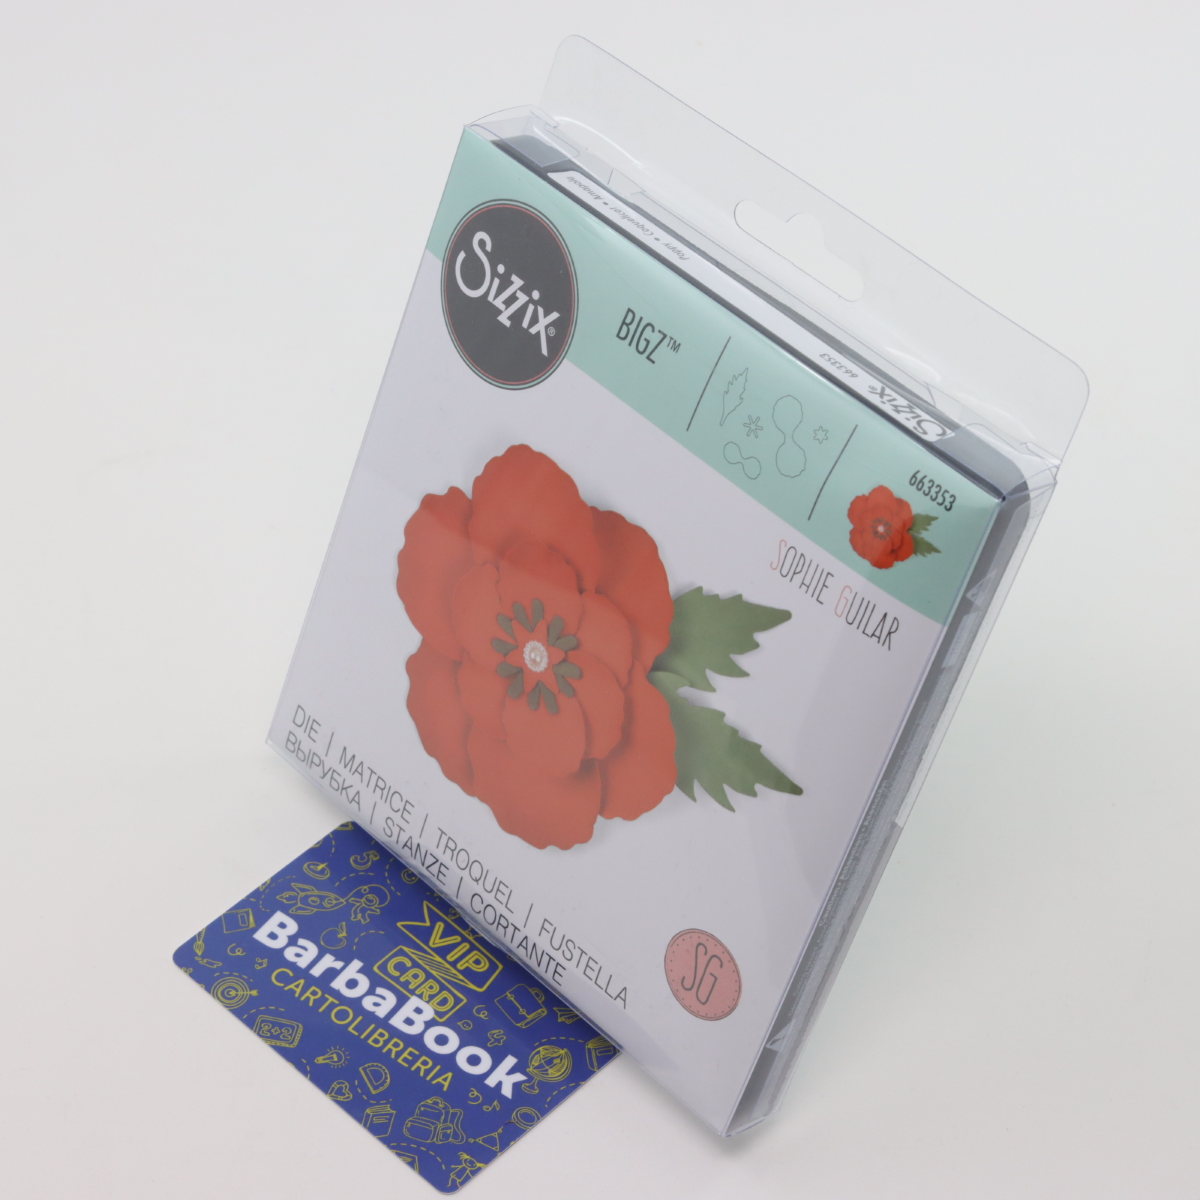 ROSSO IN FELTRO SIZZIX DIE CUT Poppy Kit Crea una completa Fiore & FOGLIE GIARDINO Bloom 